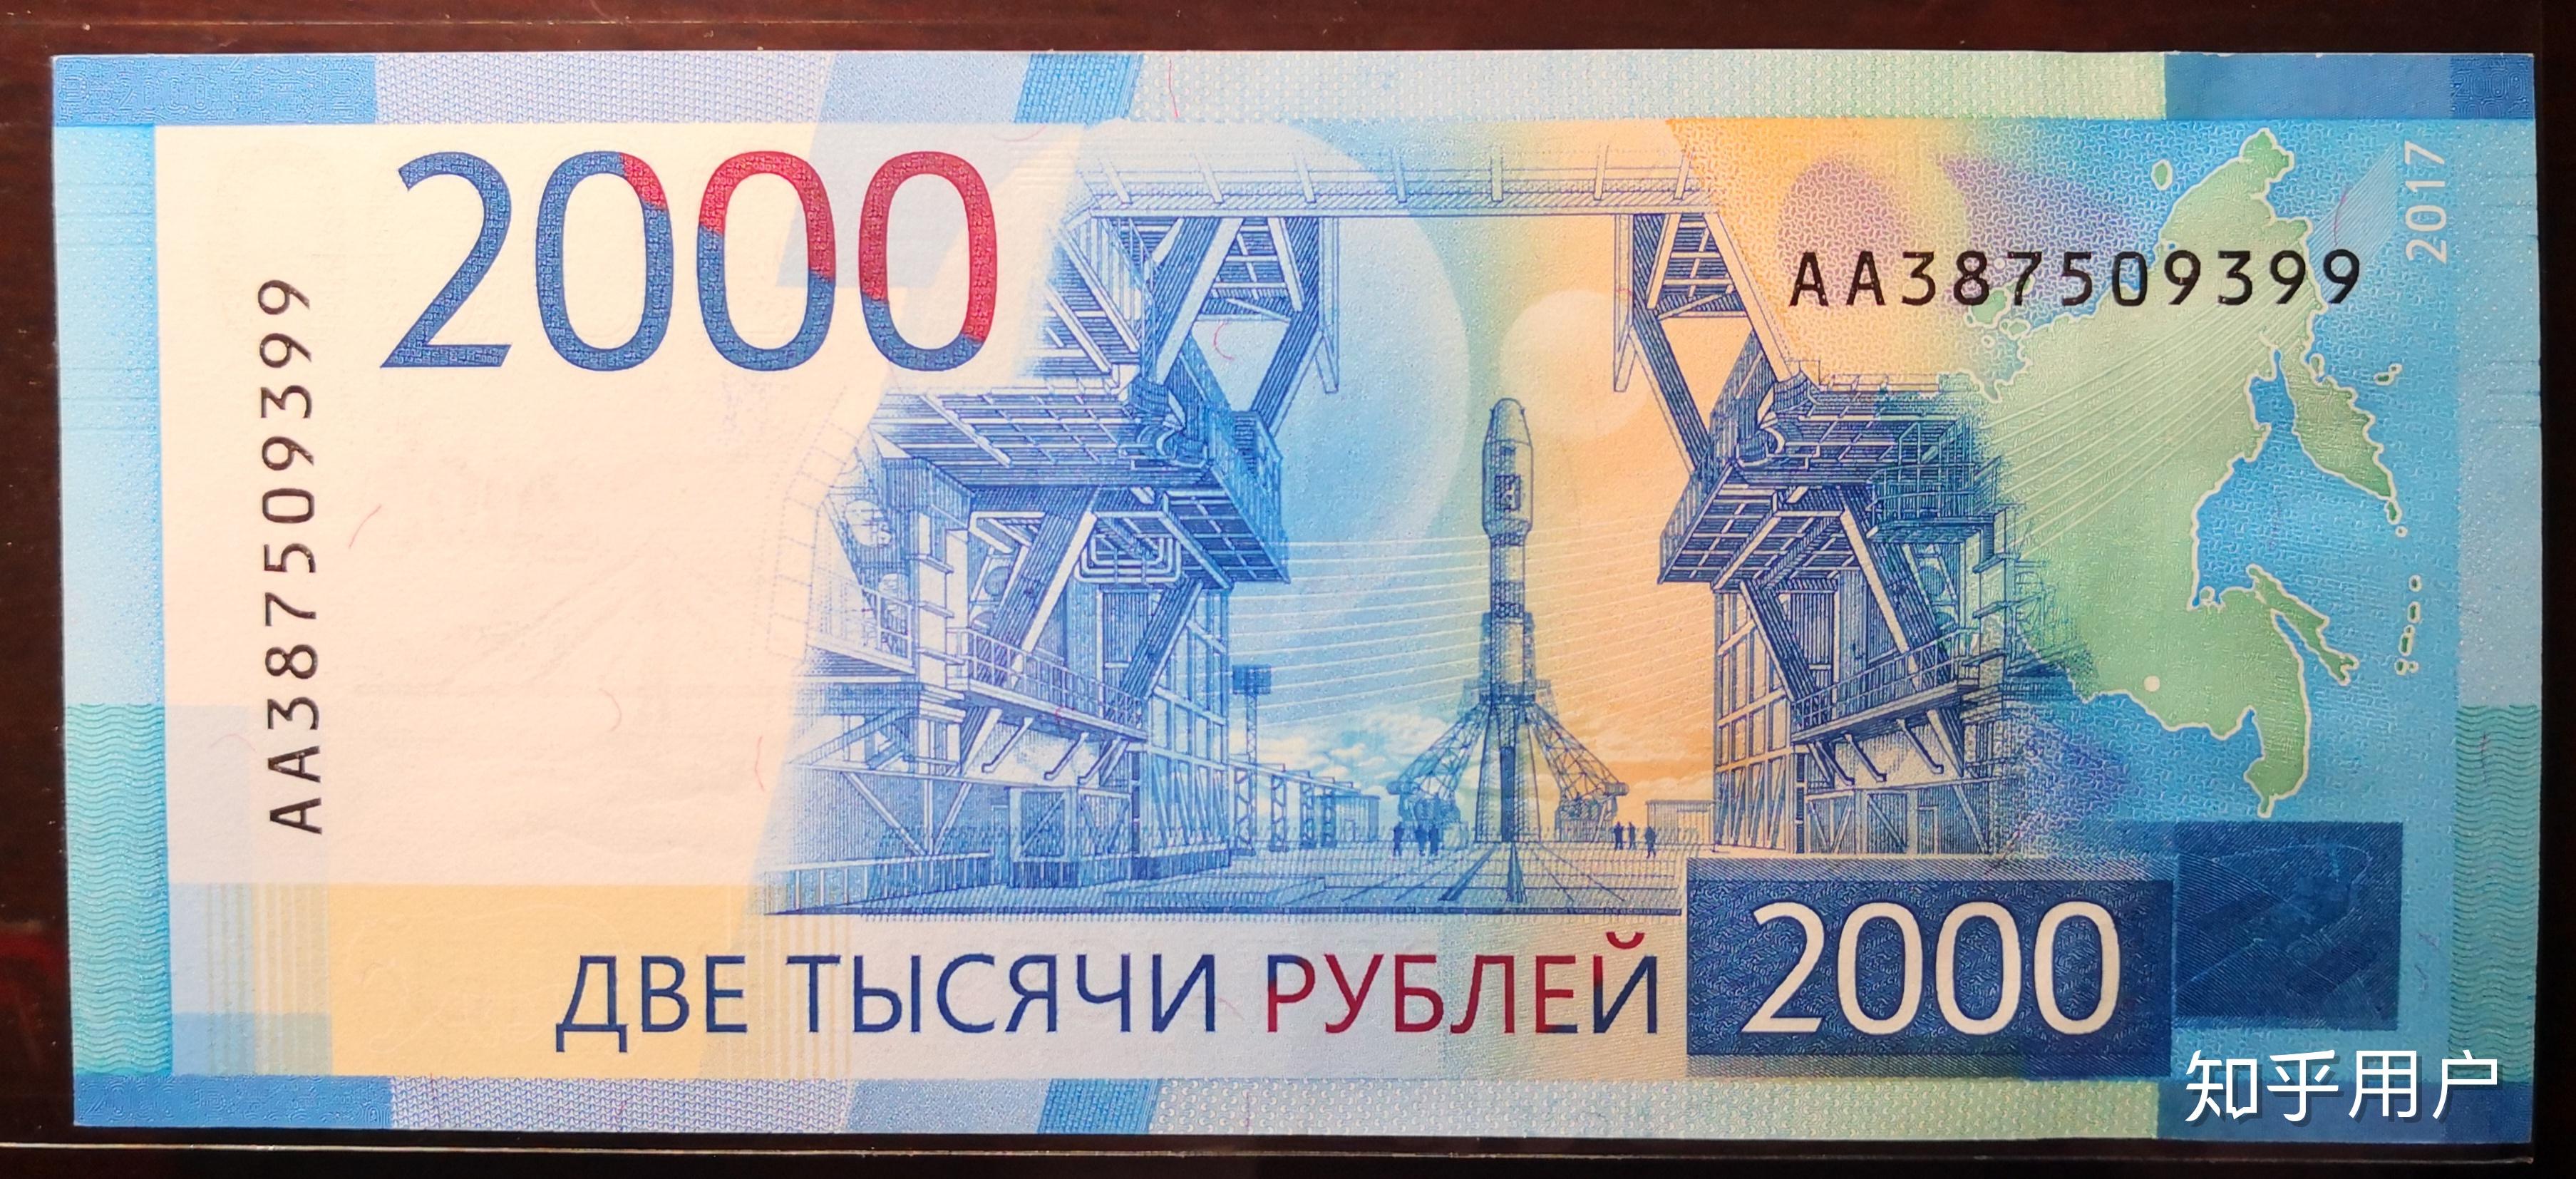 俄罗斯卢布 - 货币 – 世界的旗帜